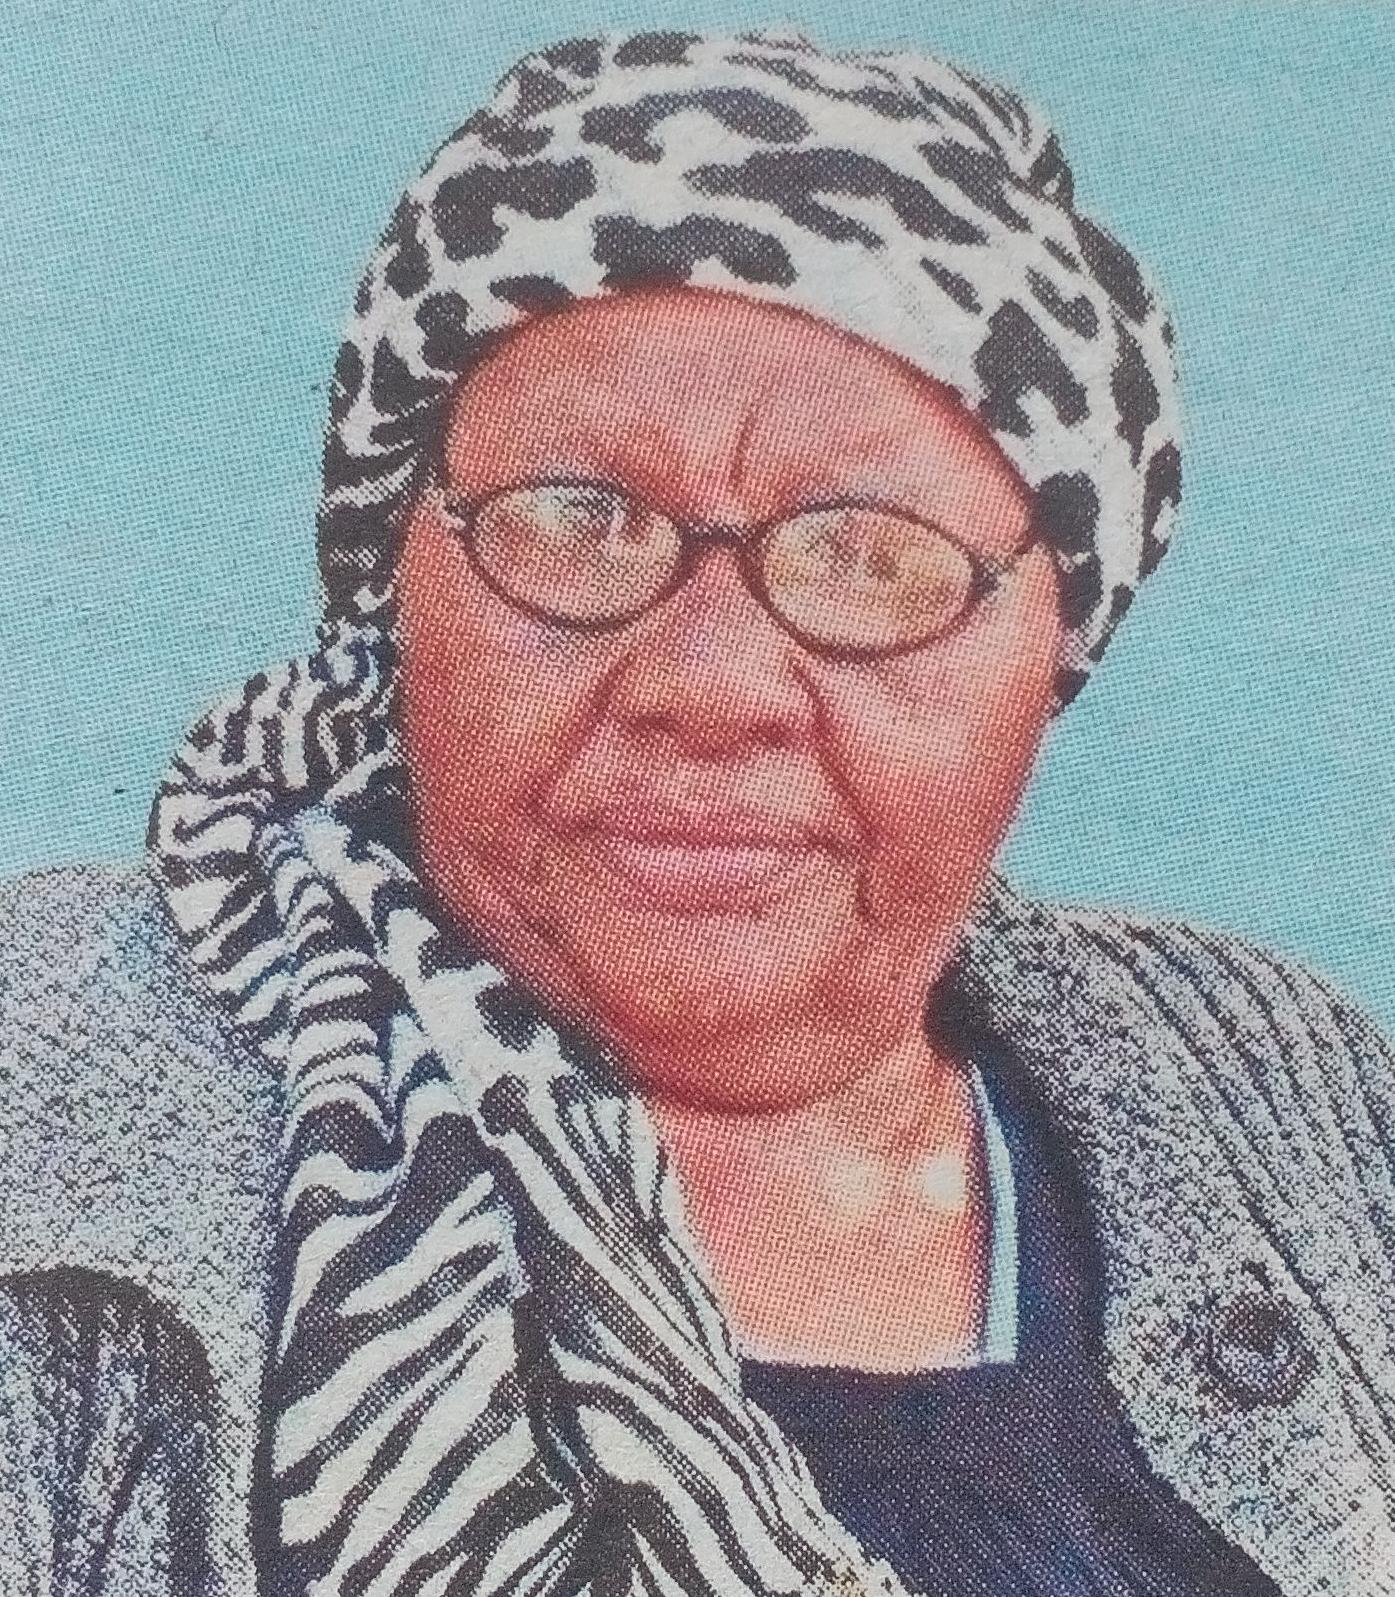 Obituary Image of Eunice Waithera Gachigi